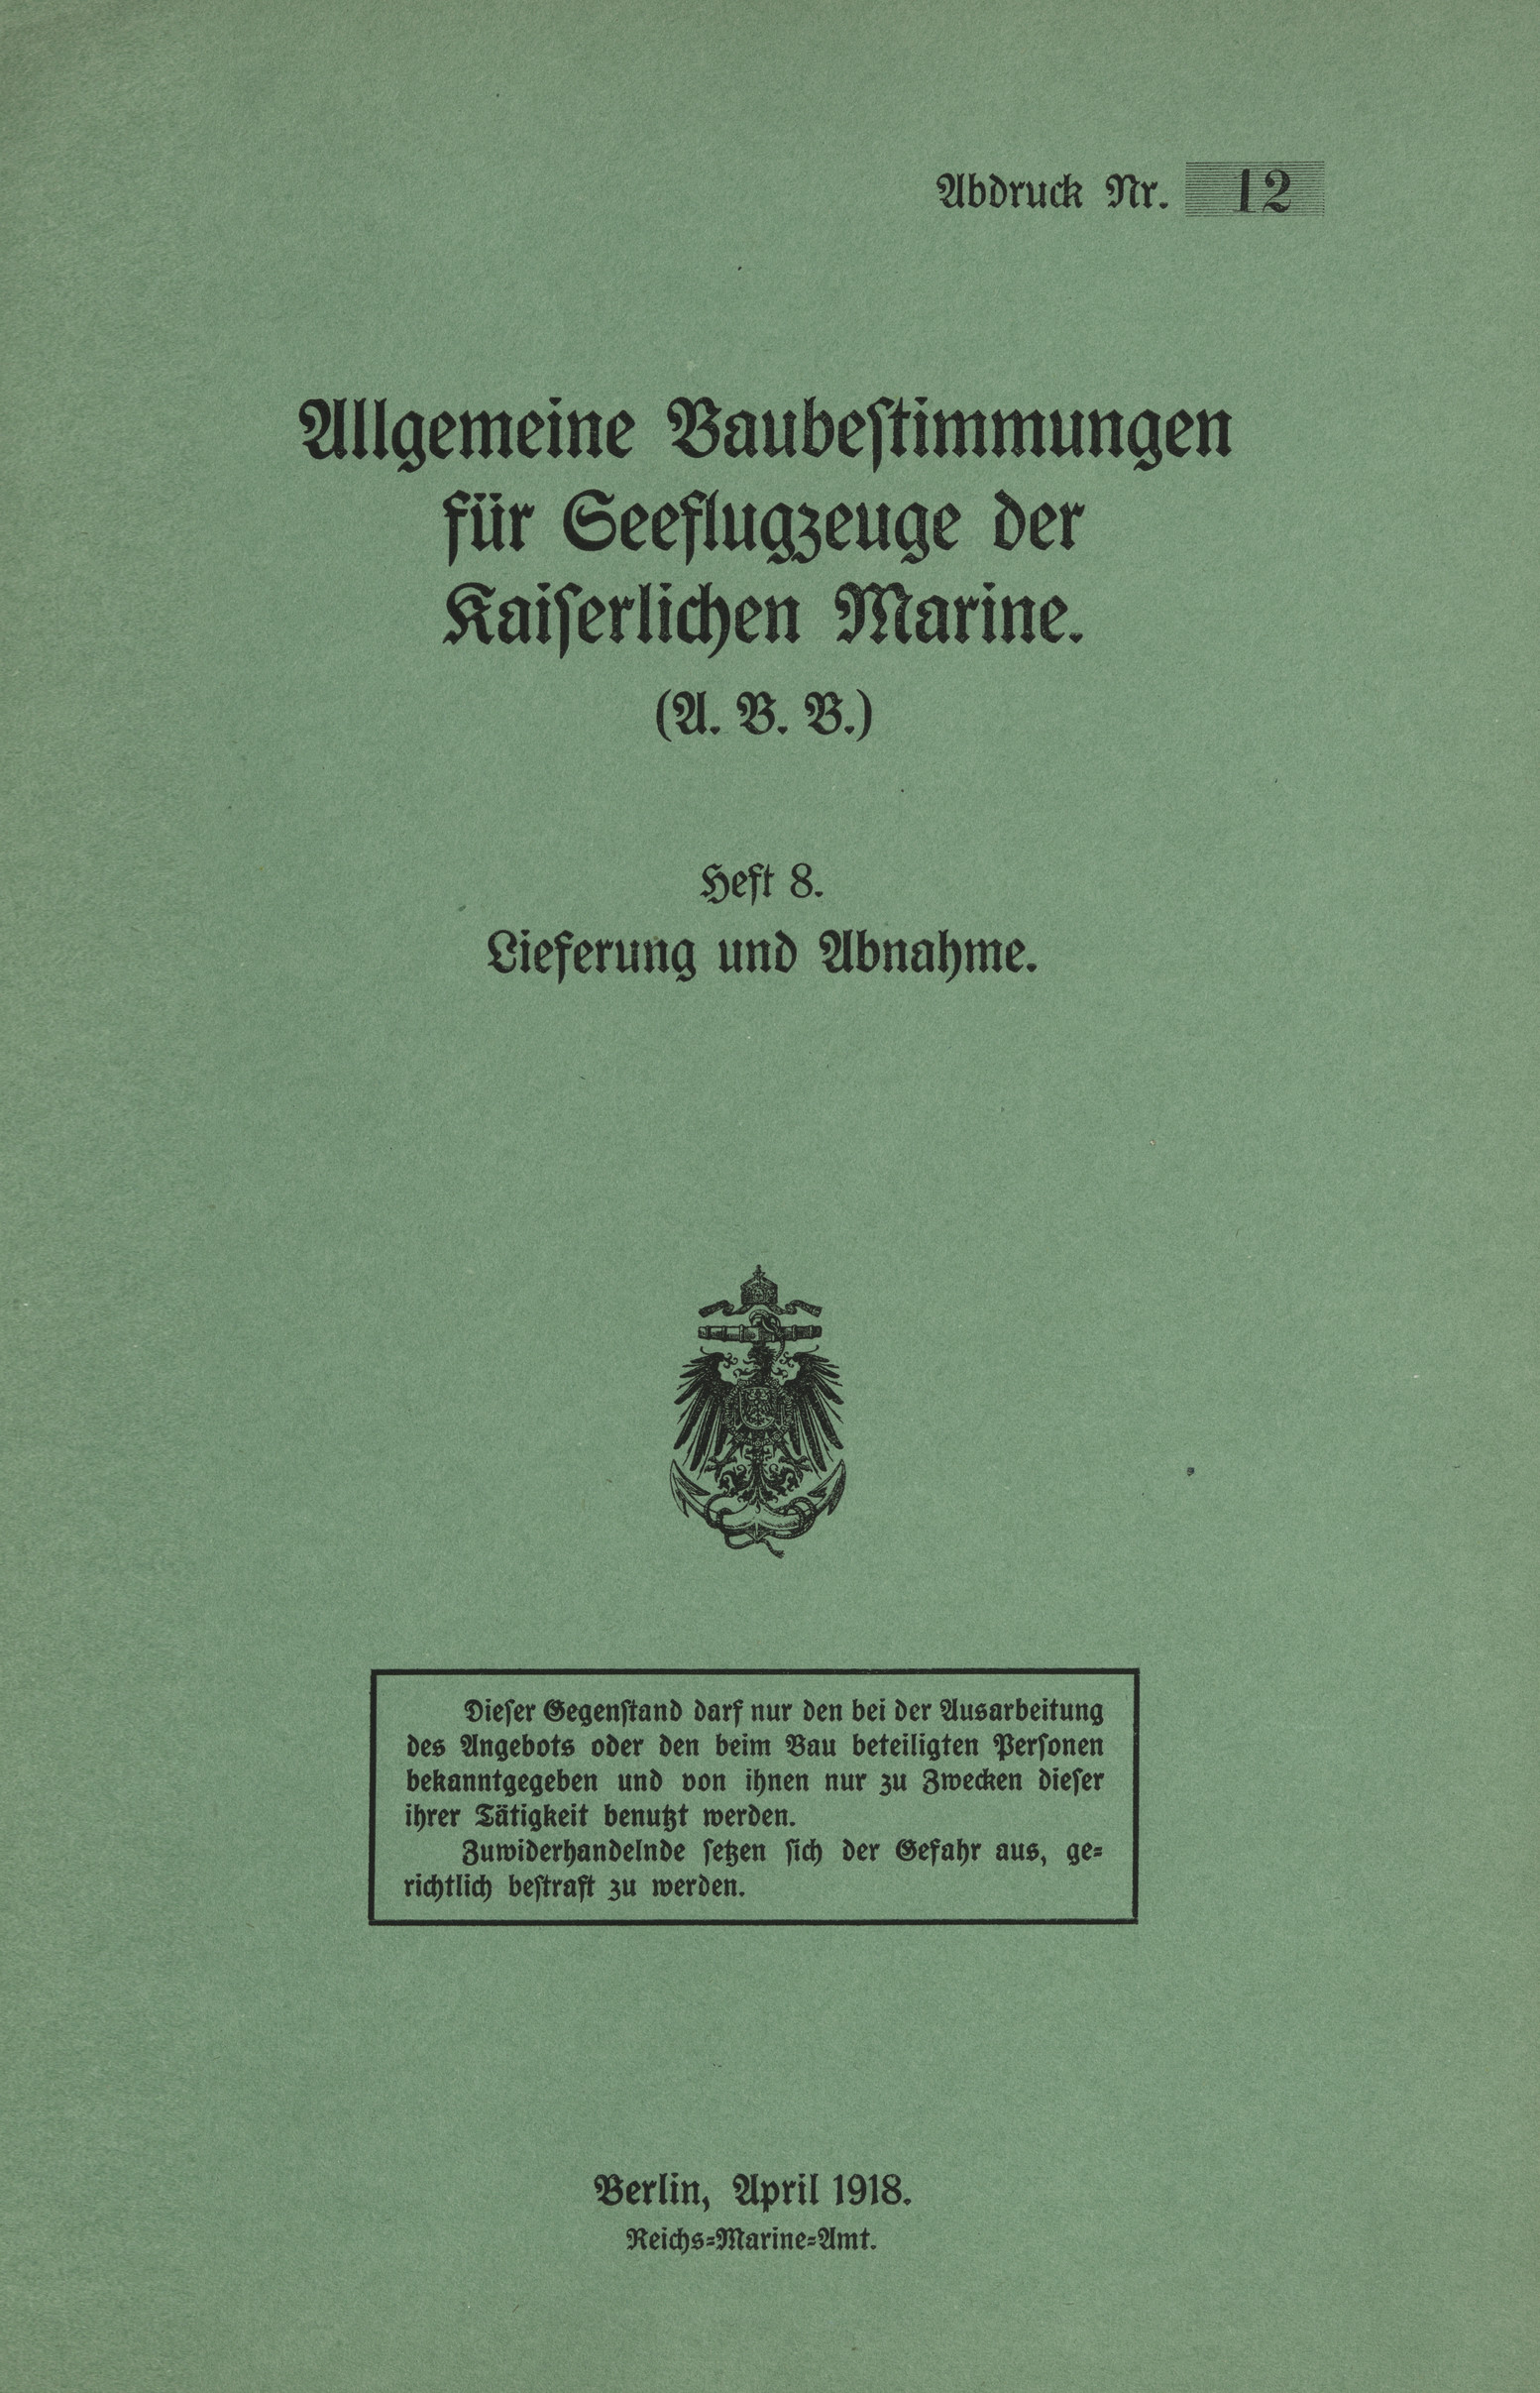 Allgemeine Baubestimmungen für Seeflugzeuge der Kaiserlichen Marine (A.B.B.) : Heft 8. Lieferung und Abnahme